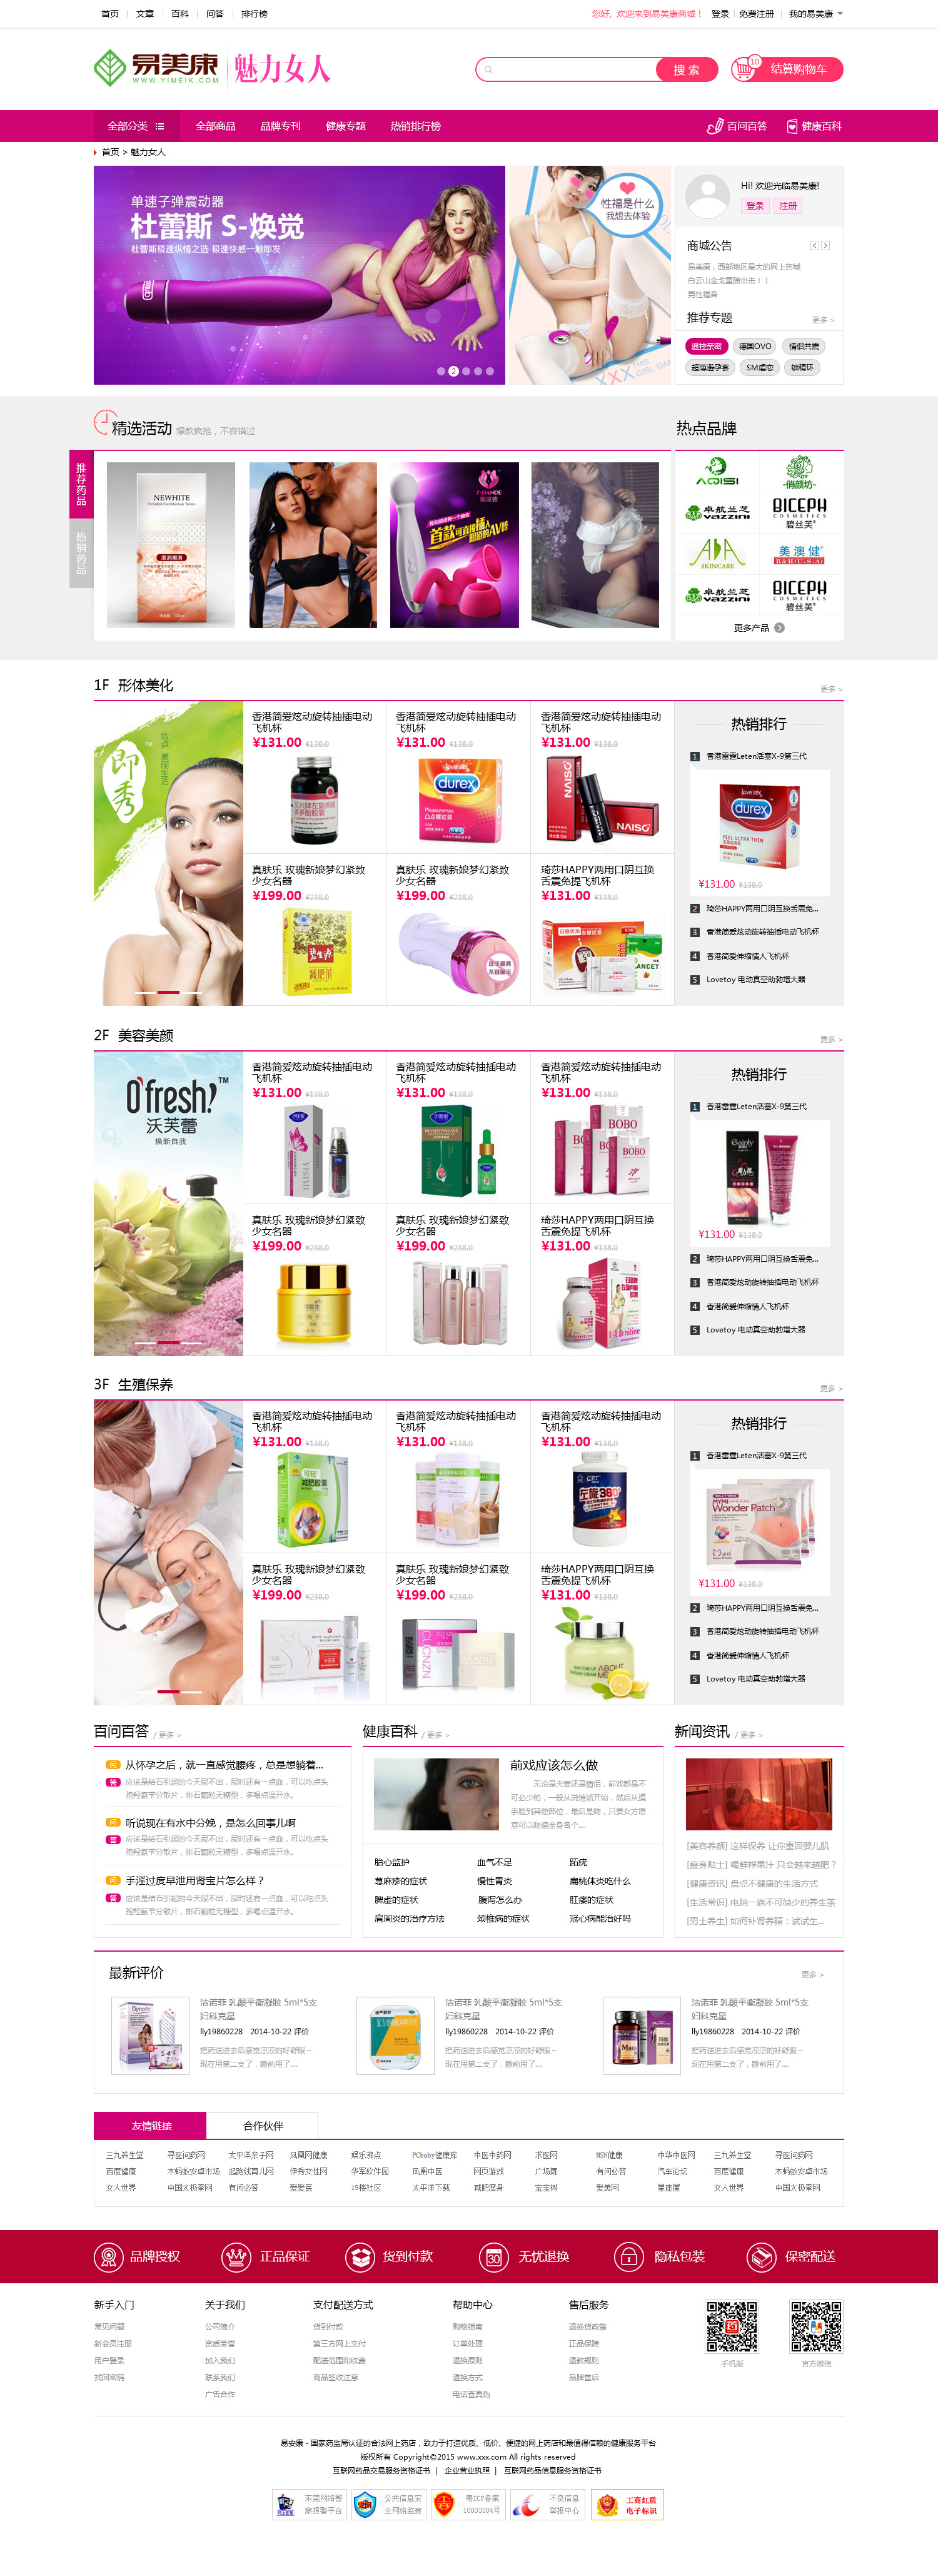 女性用品美容产品商城网站设计PSD源码